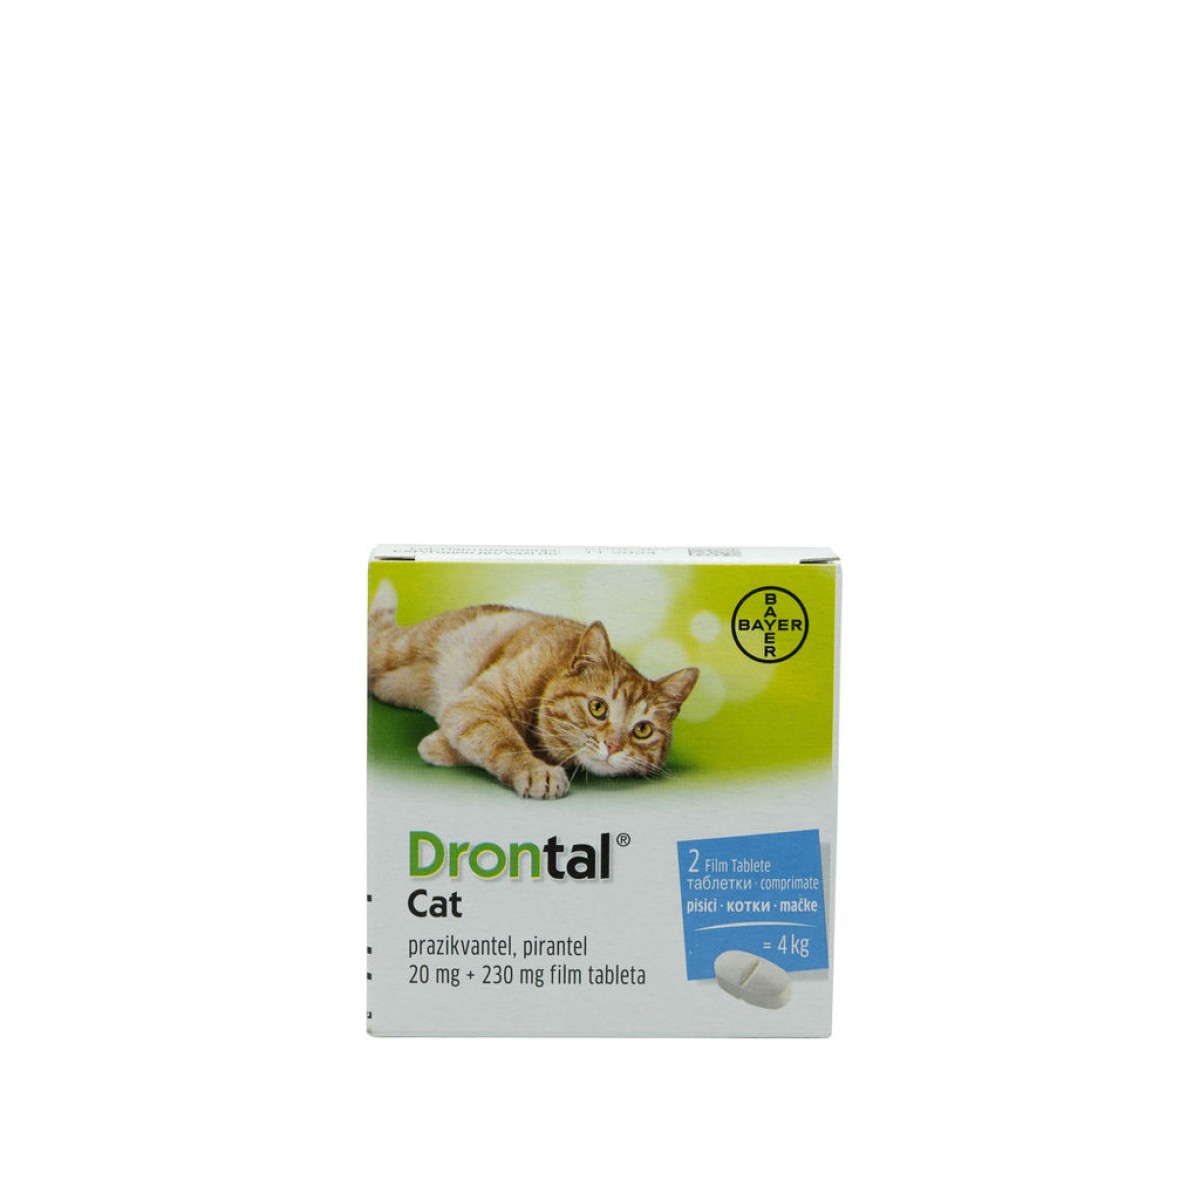 Drontal pentru pisici de până la 4kg 2 tablete antiparazitare, Antiparazitare interne, Antiparazitare, Pisici 